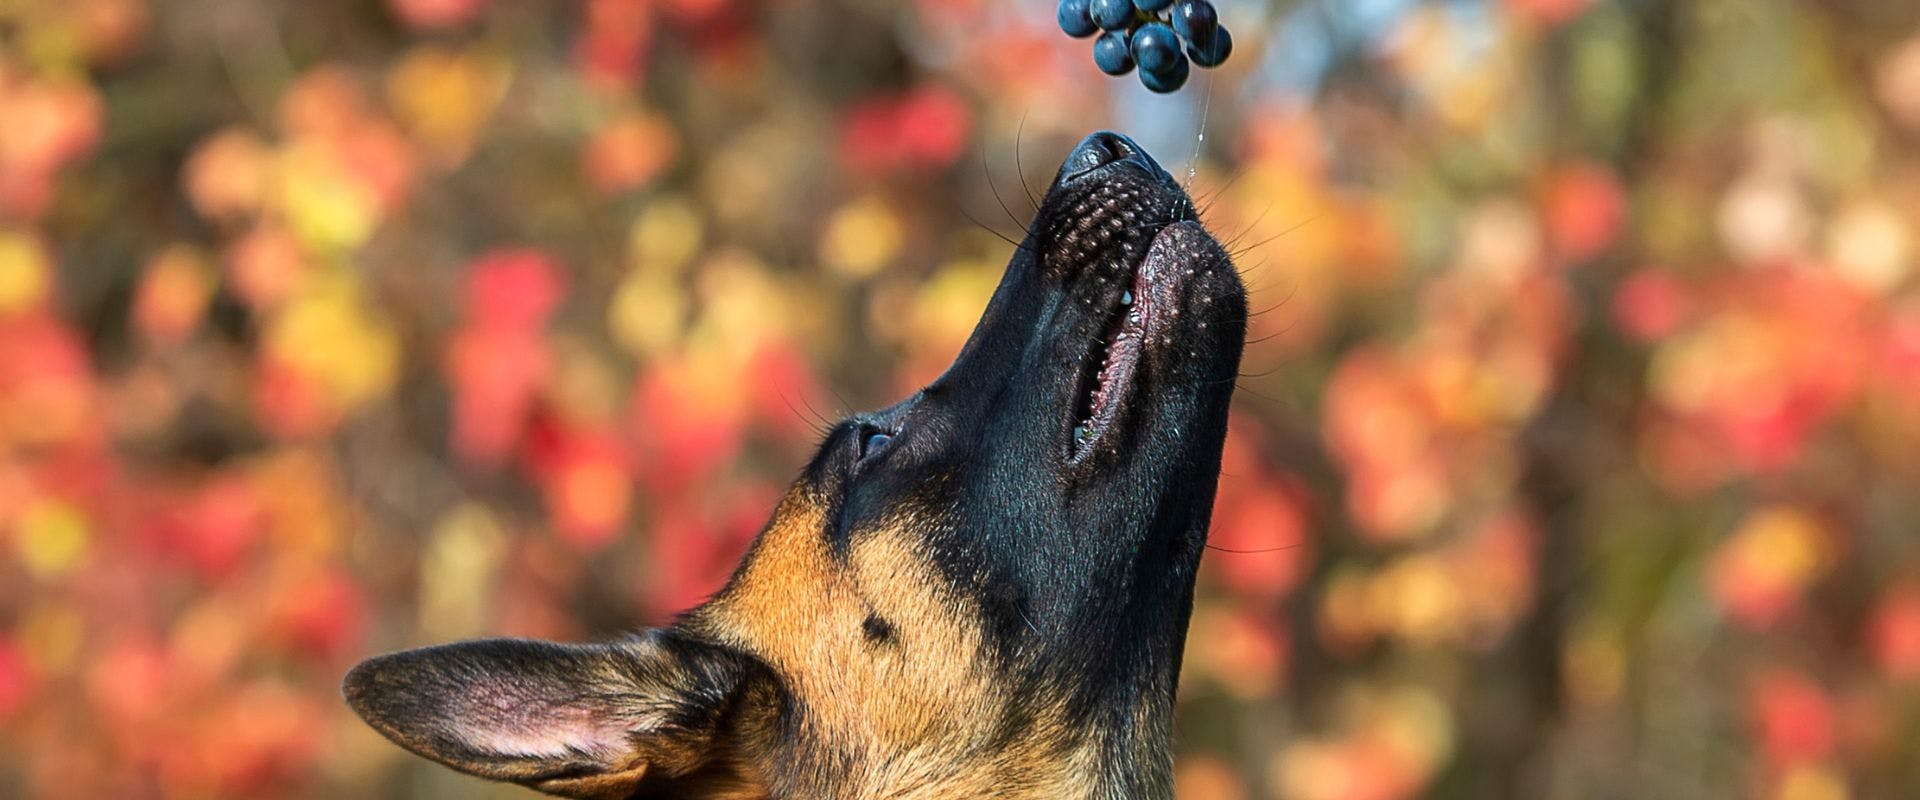 Belgian Malinois sniffing grapes